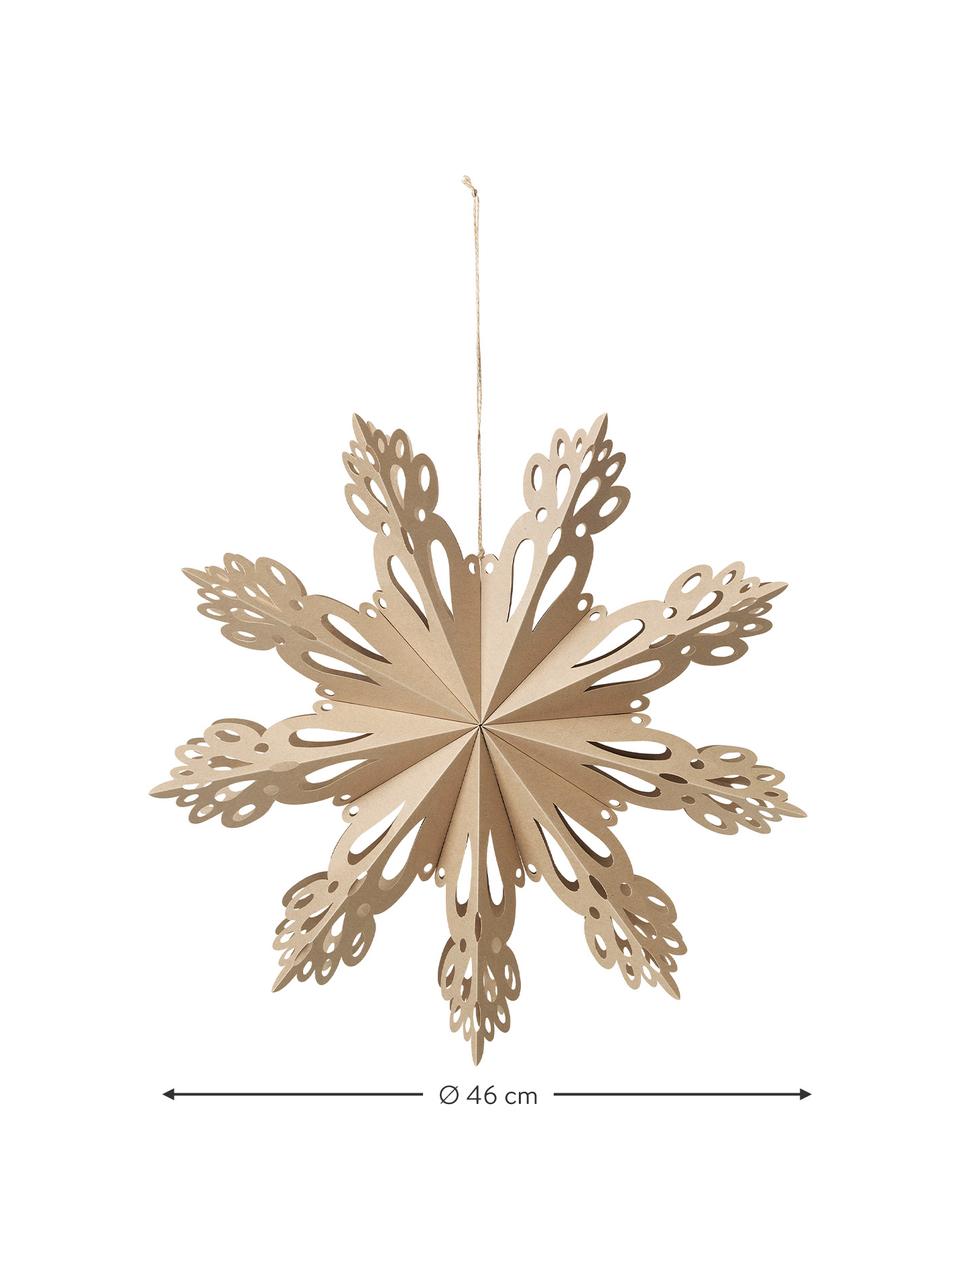 Décoration de sapin de Noël XL Snowflake Ø 46 cm, Beige